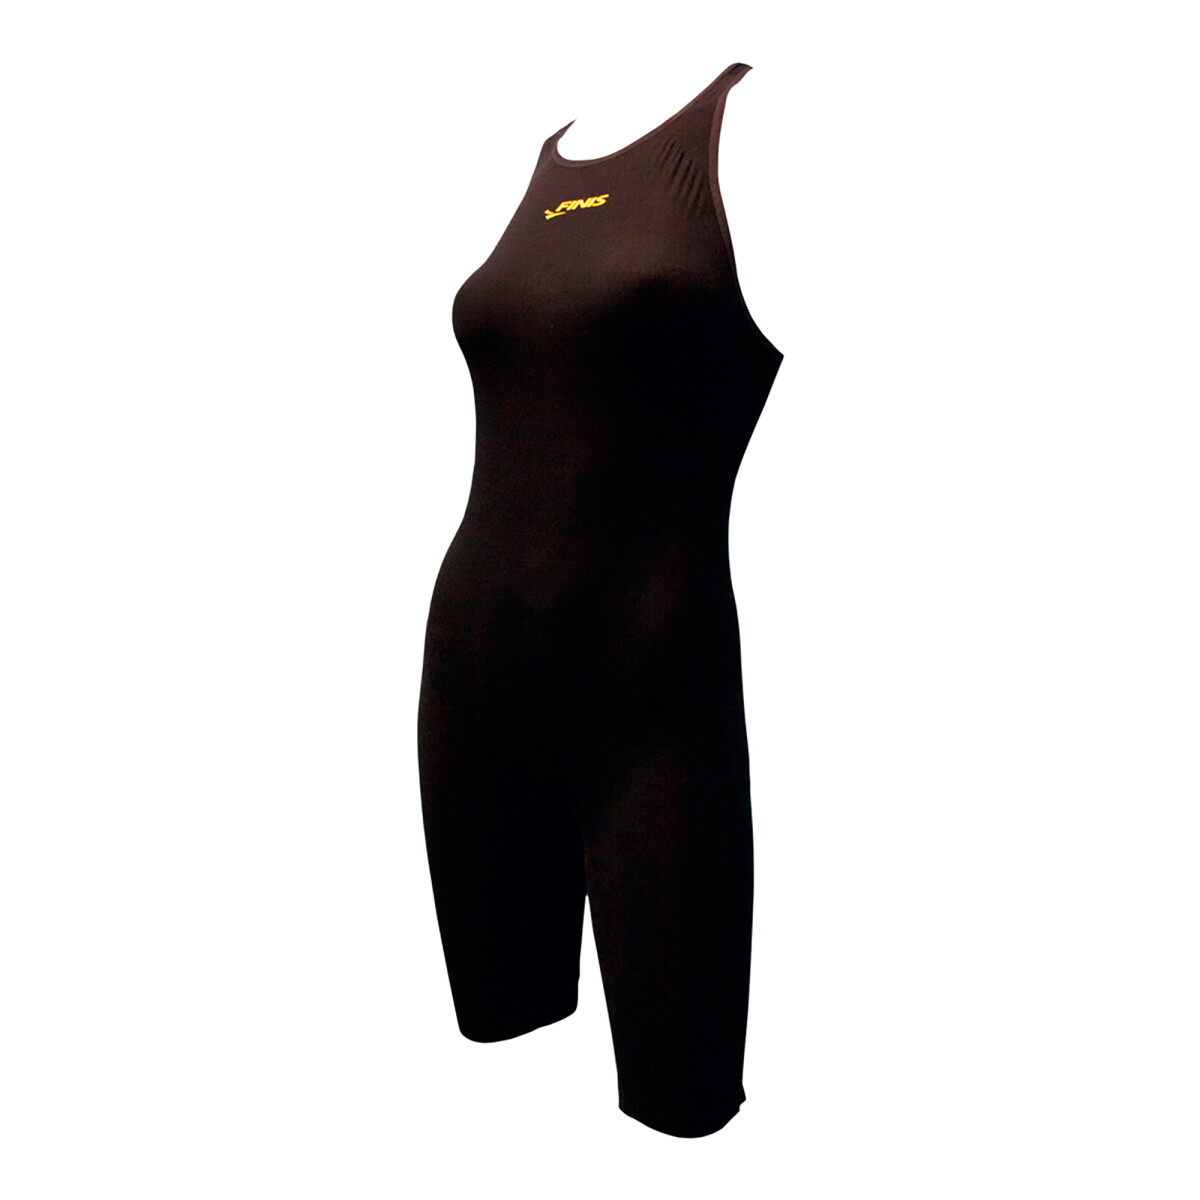 Finis - Malla de Baño para Mujer Onyx Race John 1.10.039.101.34 - para Nadadoras Competitivas. 34 (B - 001 